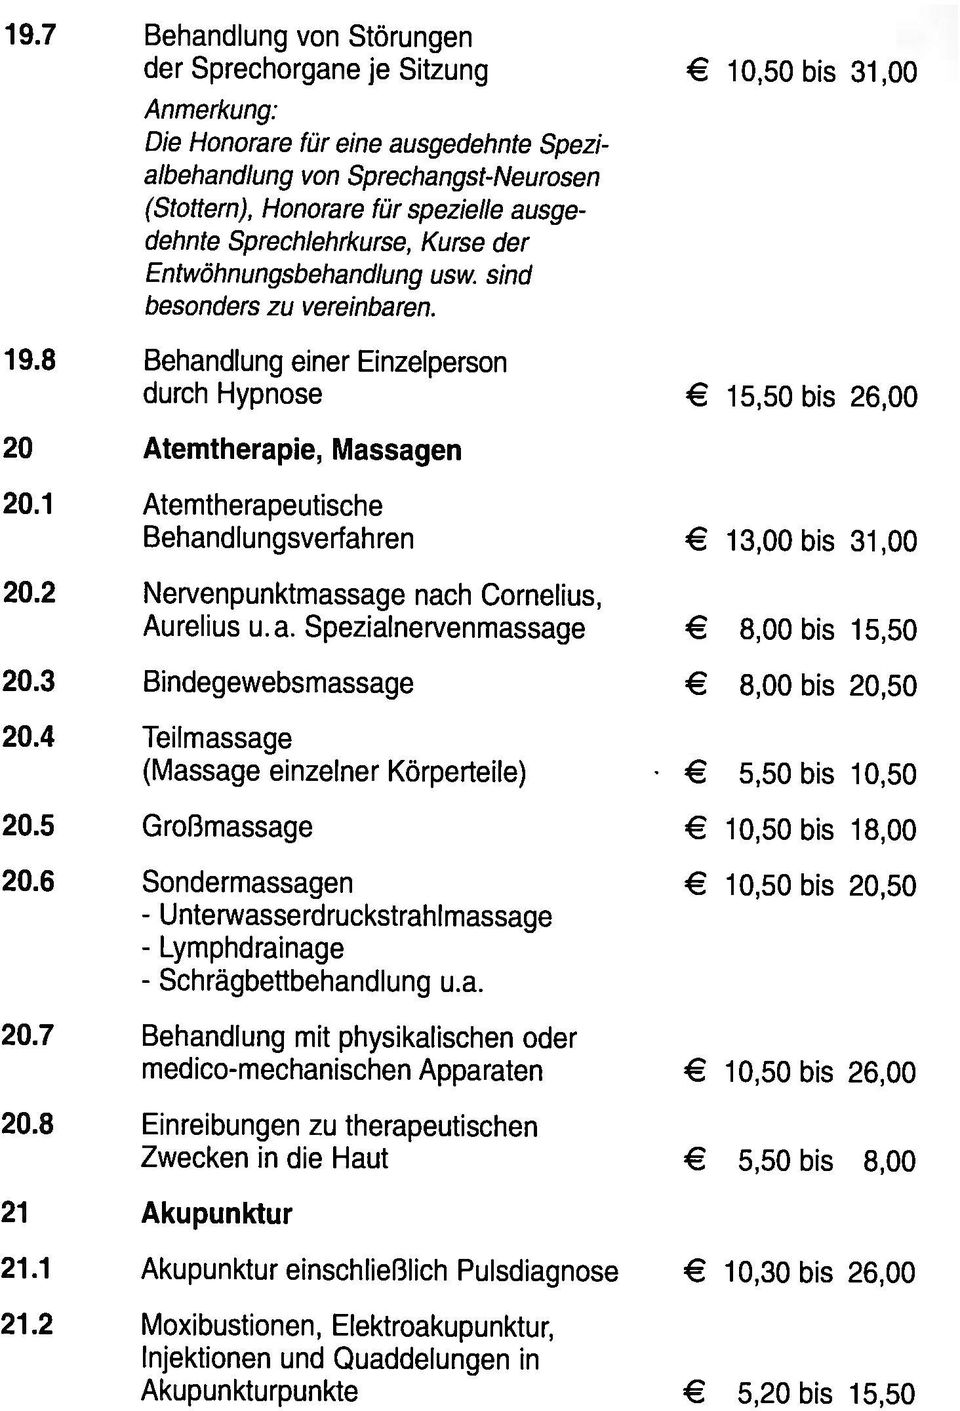 1 Atemtherapeutische Behandlungsverfahren 13,00 bis 31,00 20.2 Nervenpunktmassage nach Cornelius, Aurelius u.a. Spezialnervenmassage 8,00 bis 15,50 20.3 Bindegewebsmassage 8,00 bis 20,50 20.